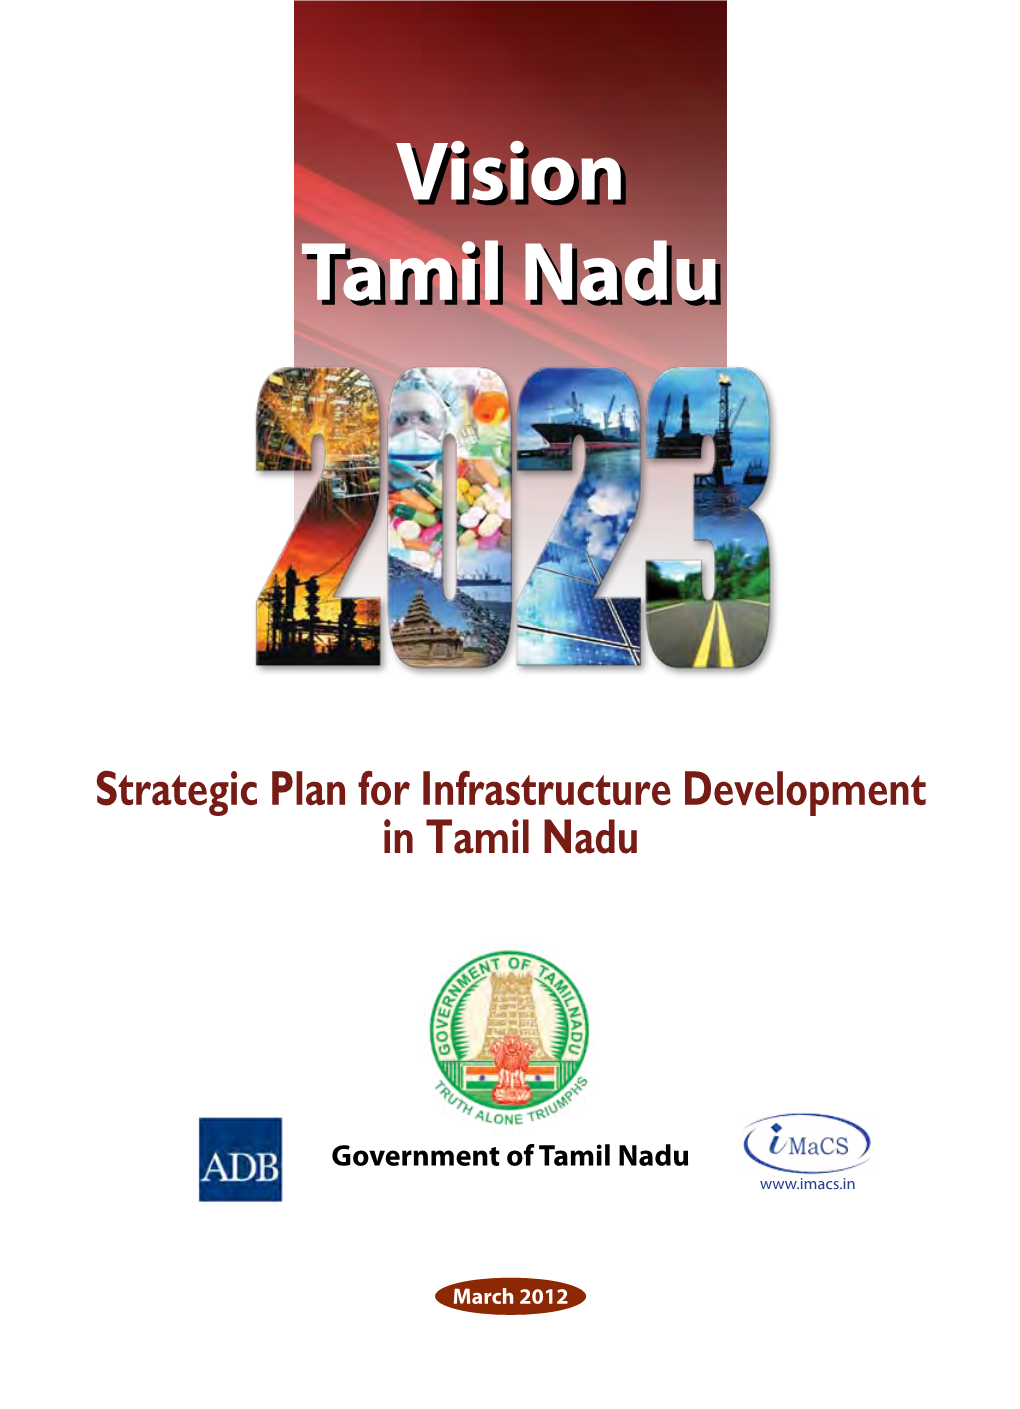 Vision 2023 Tamil Nadu 2023 Vision Tamil Nadu 2023 Vision Tamil Nadu 2023 Vision Tamil Nadu 2023 Vision 2023 Tamil Nadu